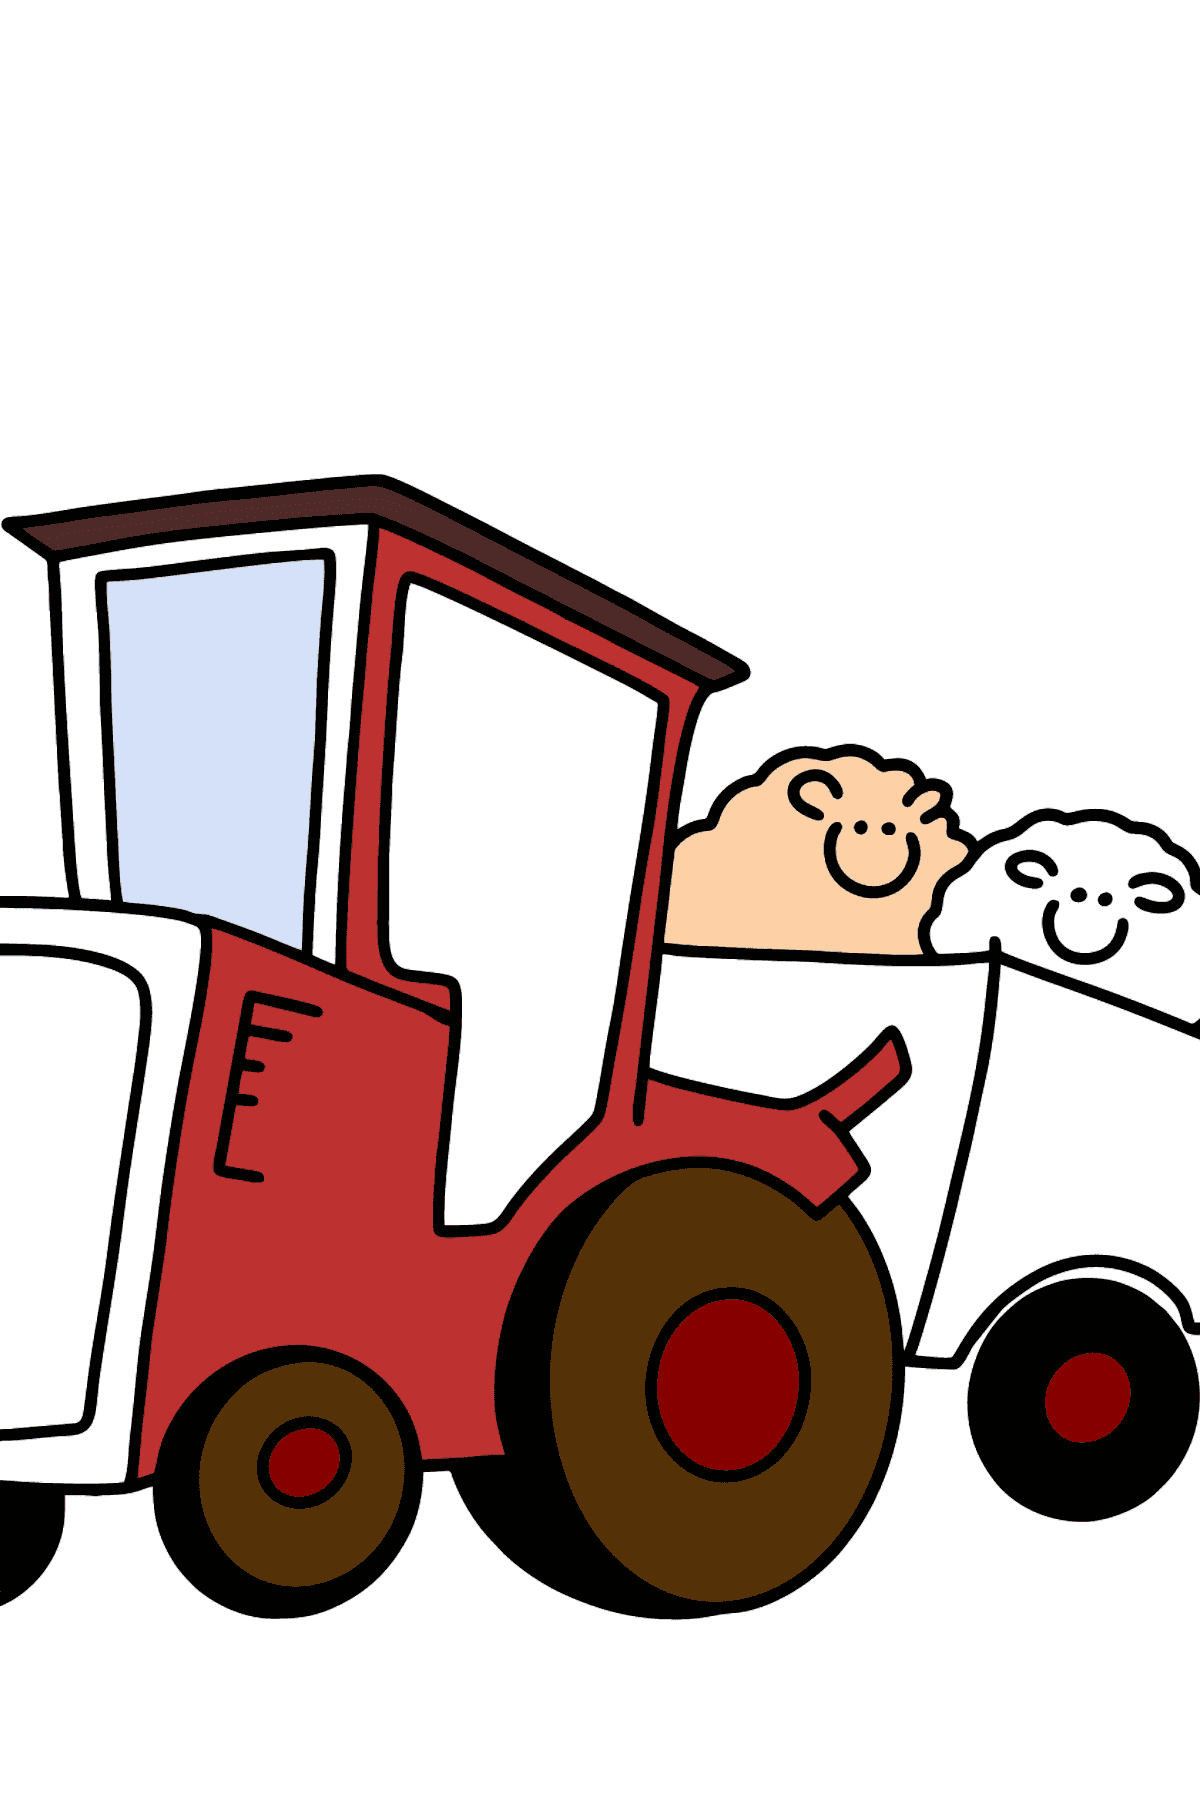 Раскраска трактор с прицепом для овец - Картинки для Детей